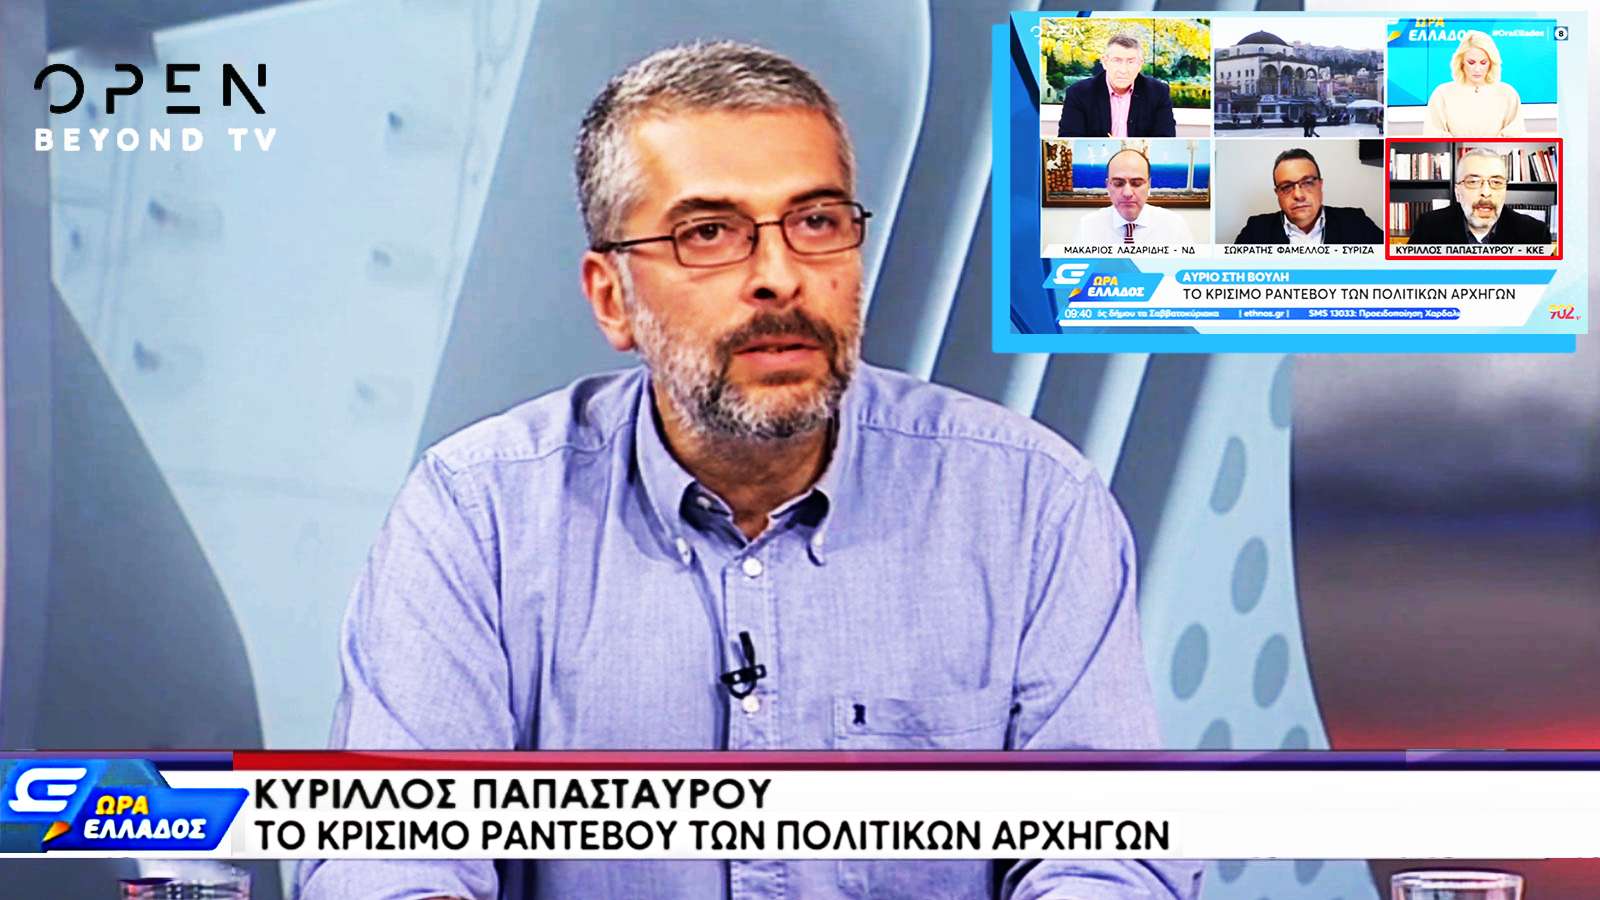 Κύριλλος Παπασταύρου ΠΓ ΚΕ ΚΚΕ TVOpen